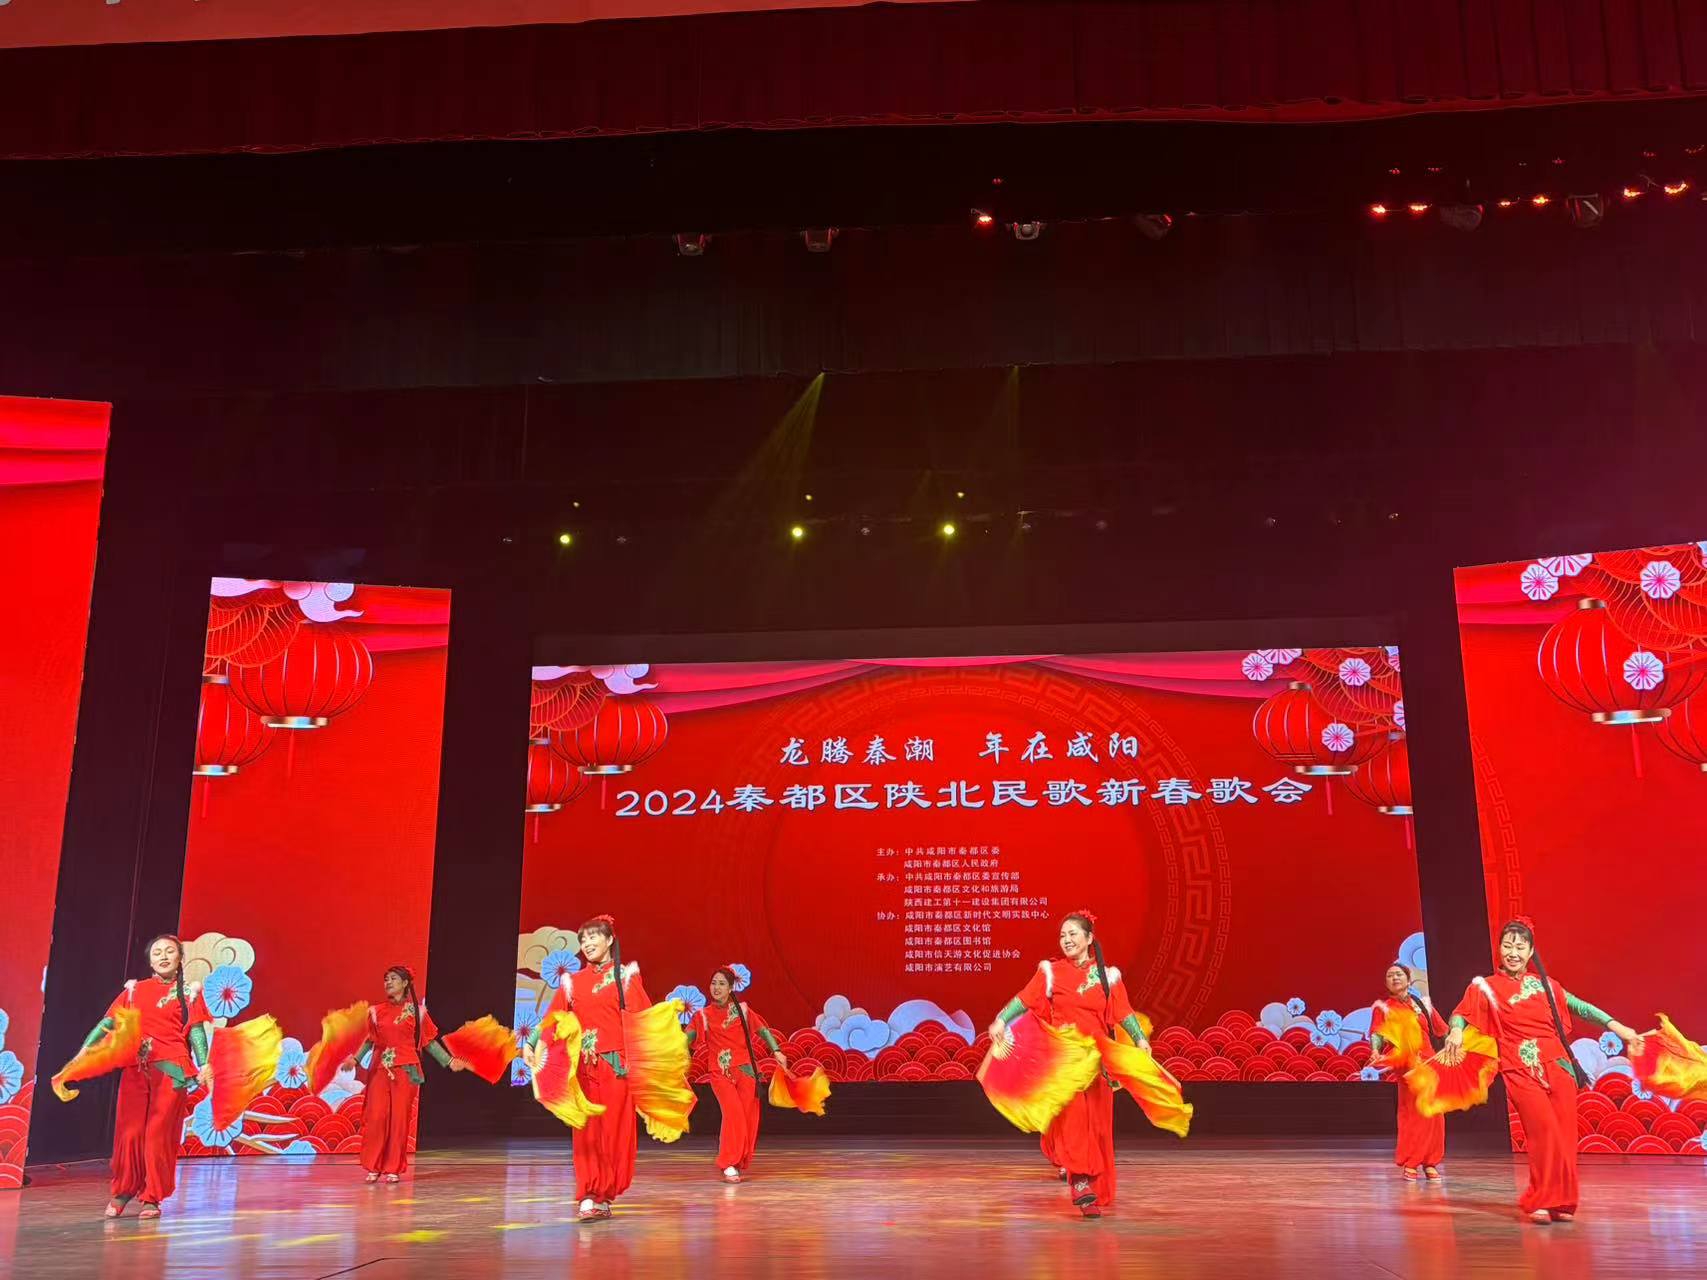 【视频】“龙腾秦潮 年在咸阳” 陕北民歌新春歌会今日举办